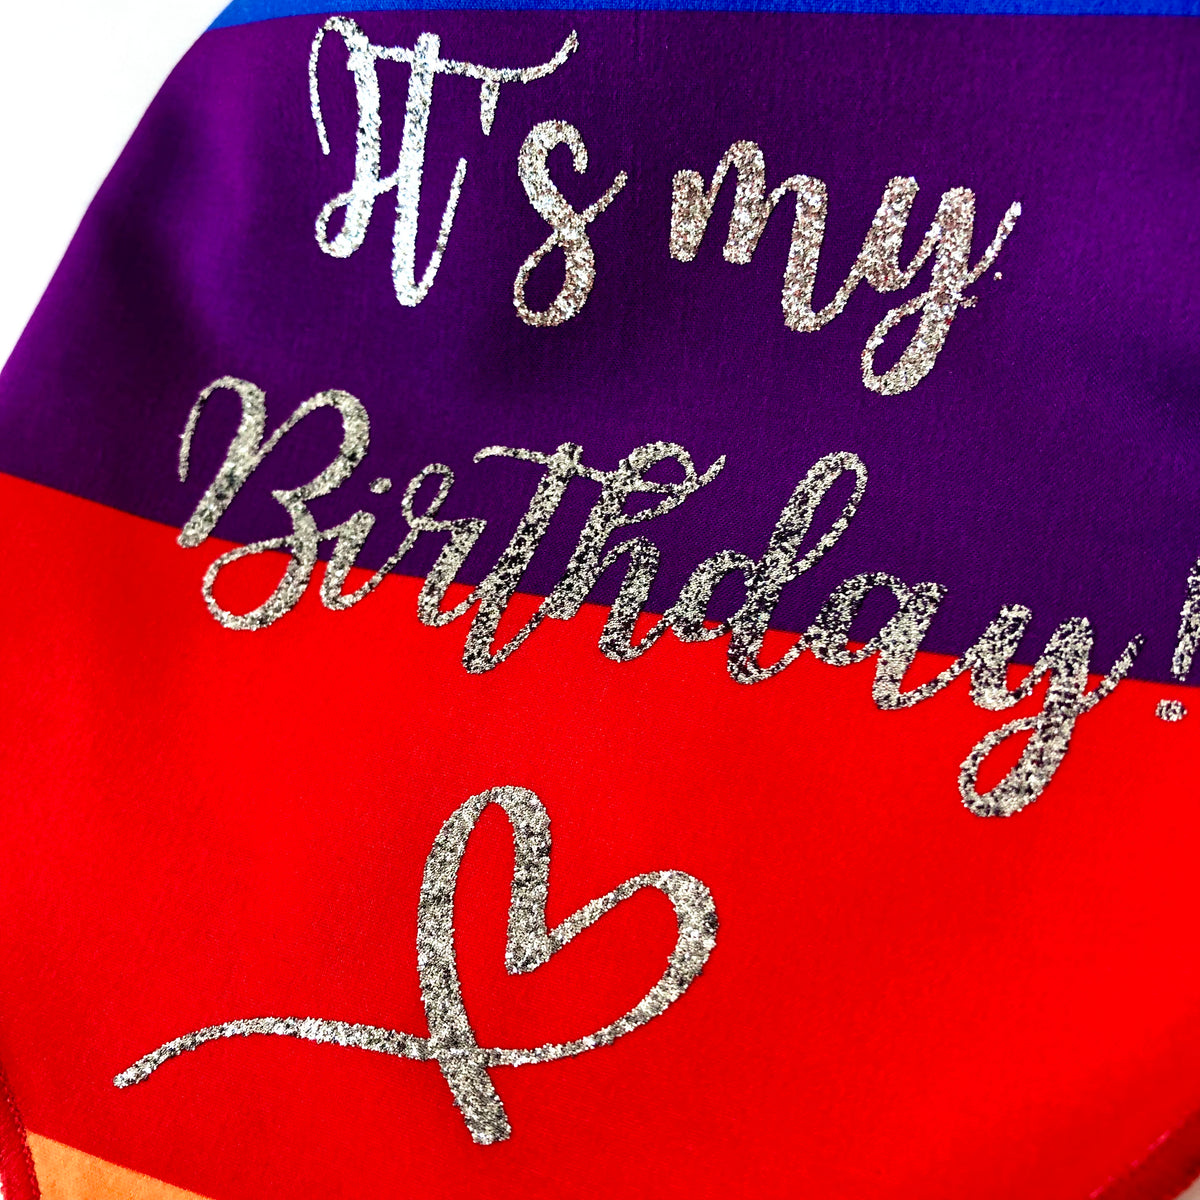 Birthday Dog Bandana, "It's My Birthday", Birthday Party Dog Bandana, Rainbow